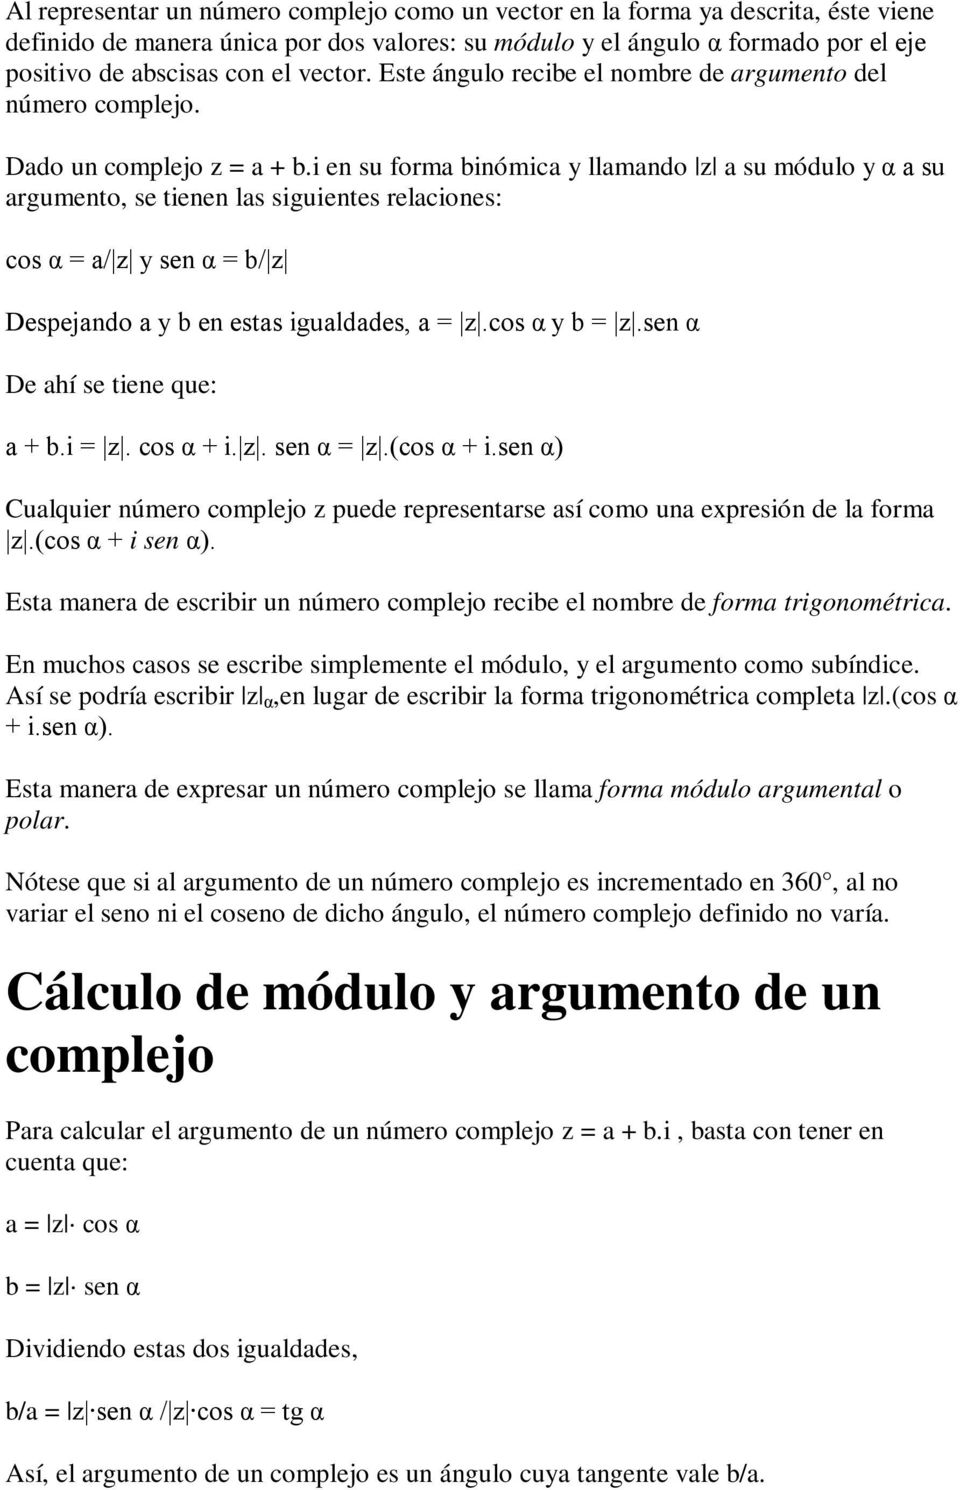 i en su forma binómica y llamando z a su módulo y α a su argumento, se tienen las siguientes relaciones: cos α = a/ z y sen α = b/ z Despejando a y b en estas igualdades, a = z.cos α y b = z.